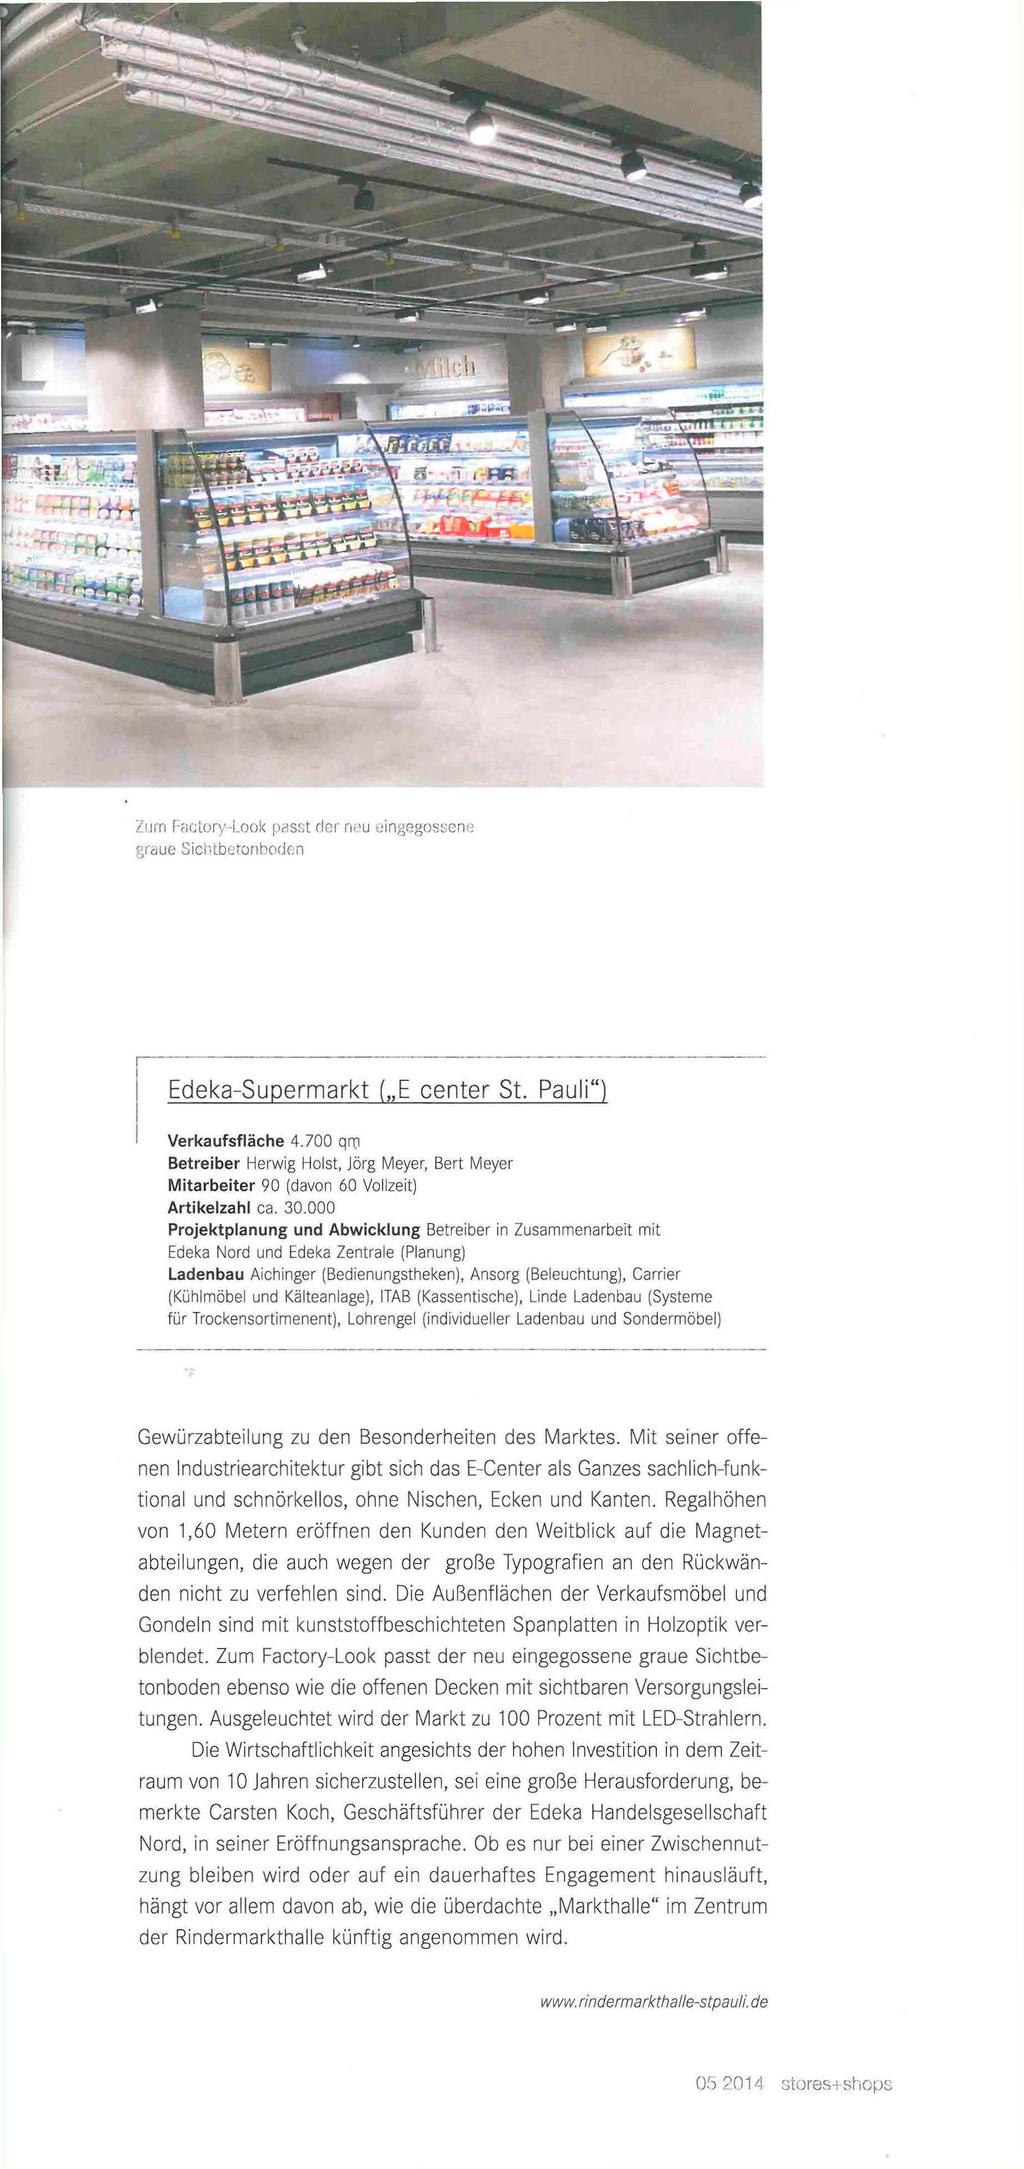 Zum Pactory-Look passt der neu eingegossen«graue Sichtbetonboden Edeka-Supermarkt ( E center St. Pauli") Verkaufsfläche 4.